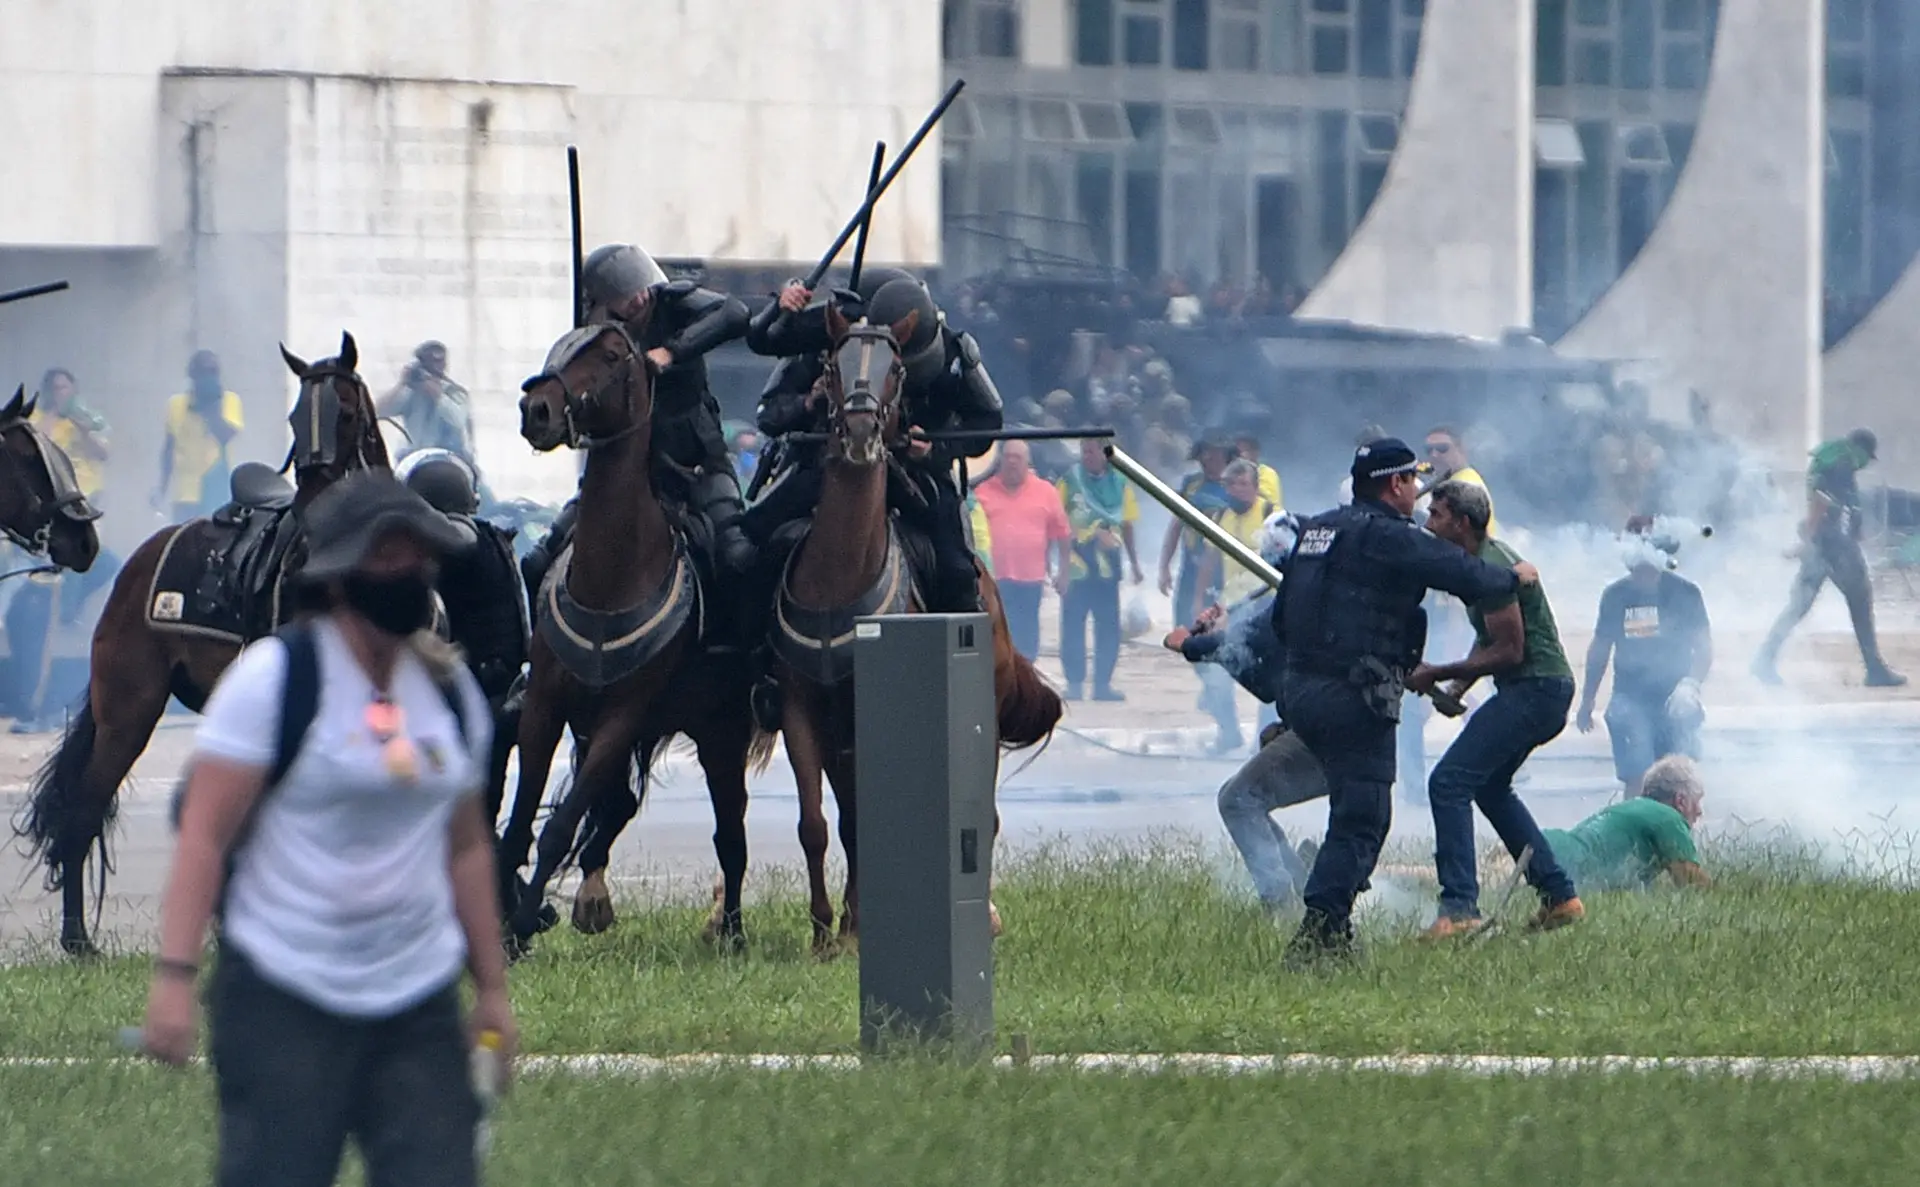 CONFRONTOS. Elementos da cavalaria da Polícia Militar recorrem à força para dispersar participantes na invasão ao Planalto